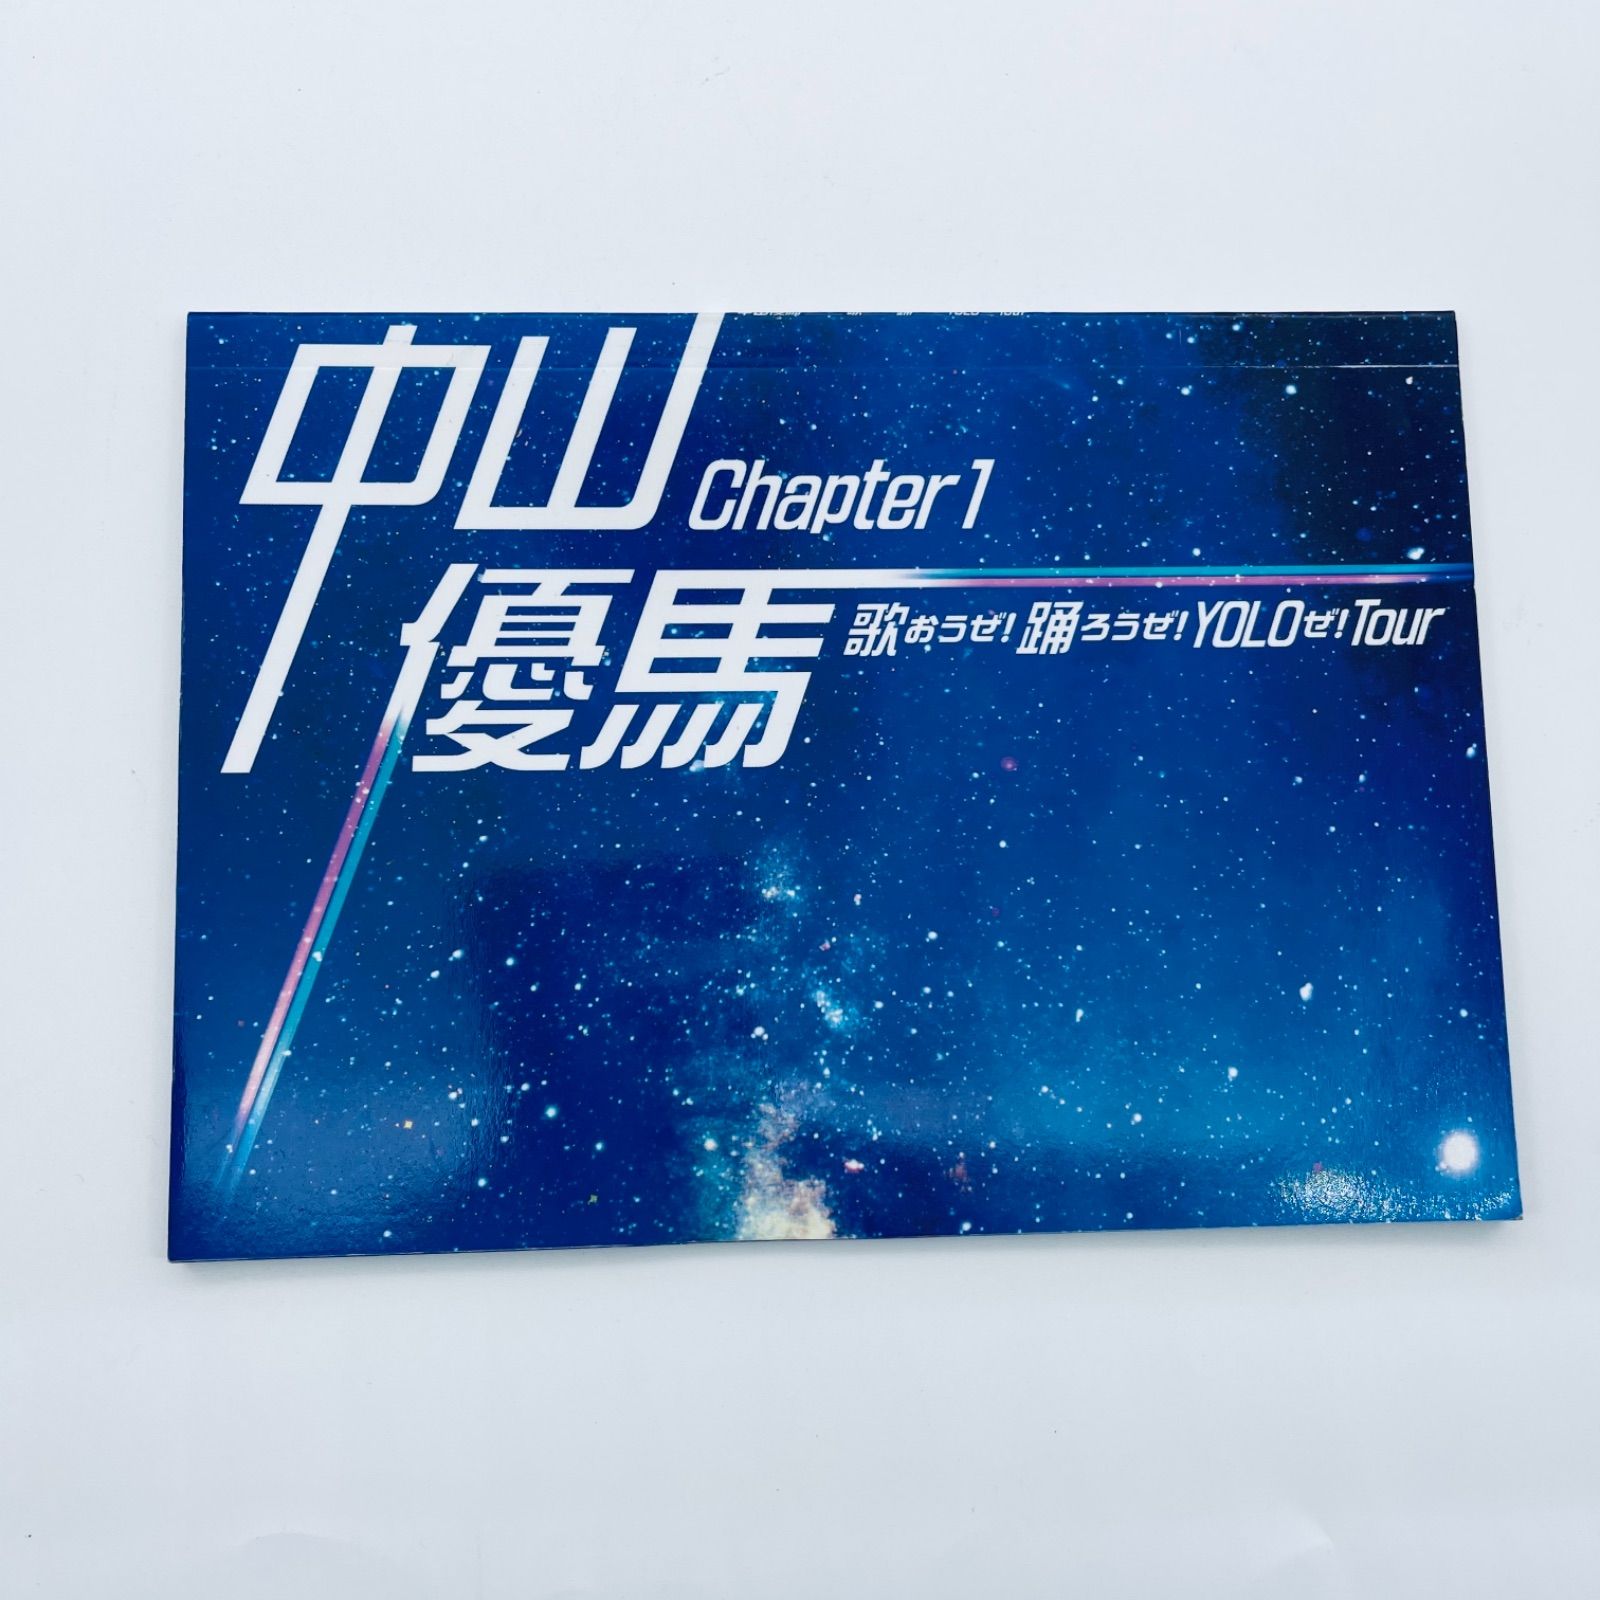 中山優馬 chapter1 デラックス盤Blu-ray - アイドル